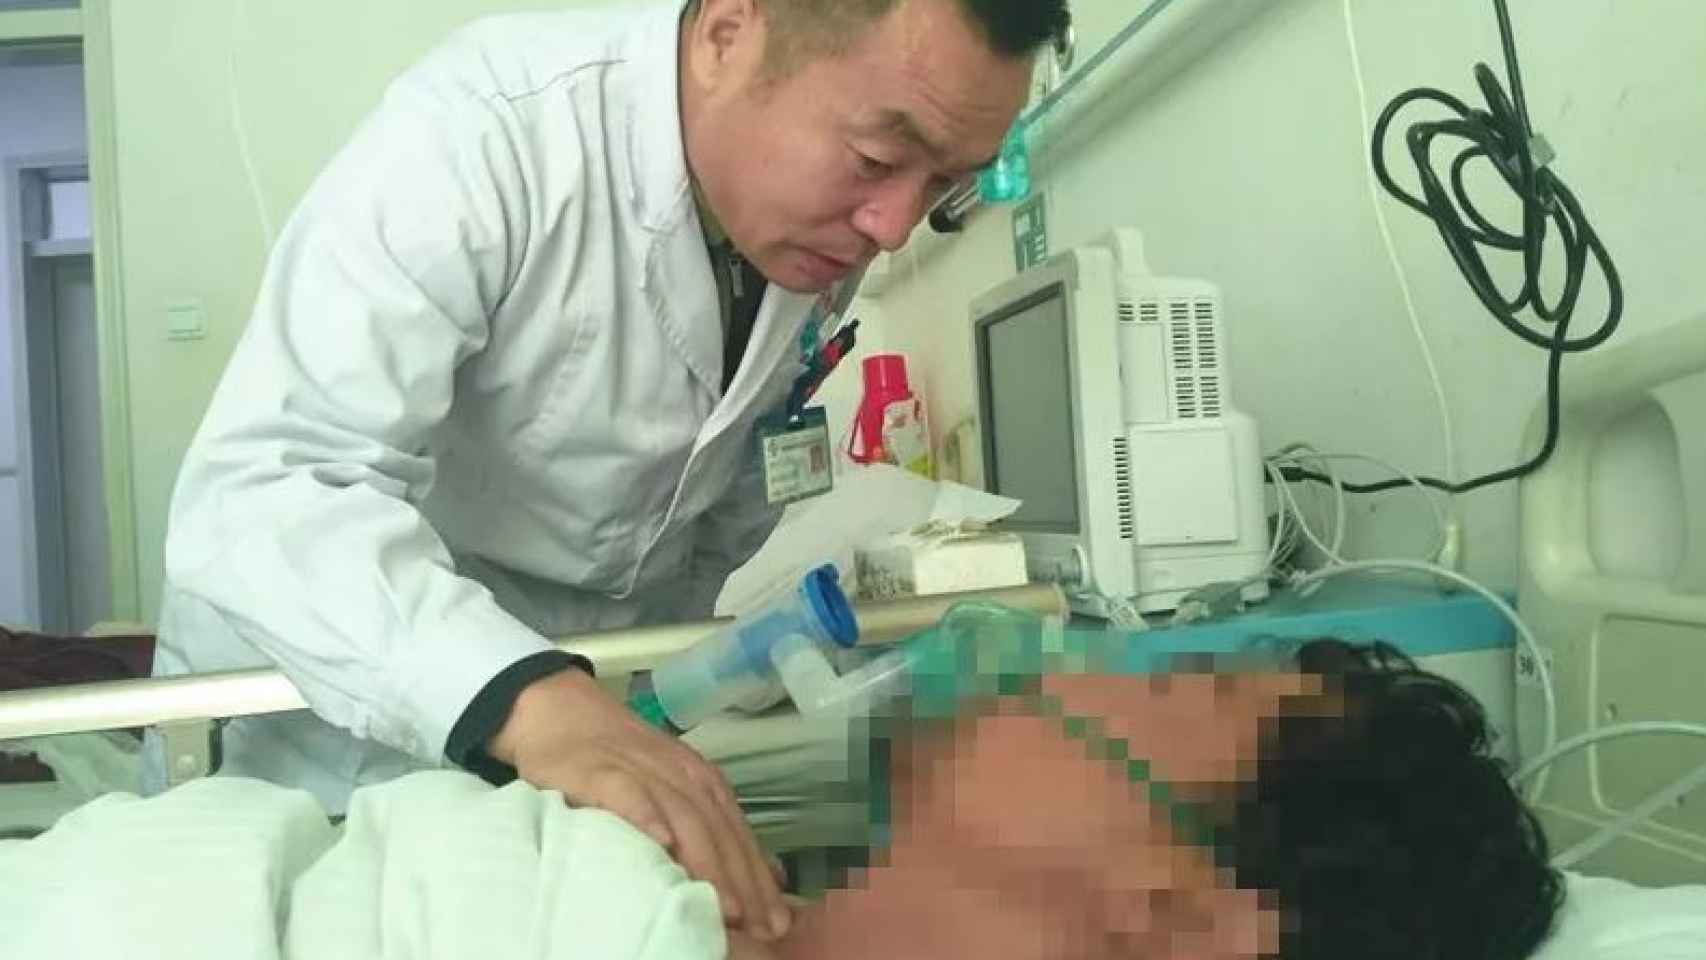 El doctor Xiwu examina al paciente.